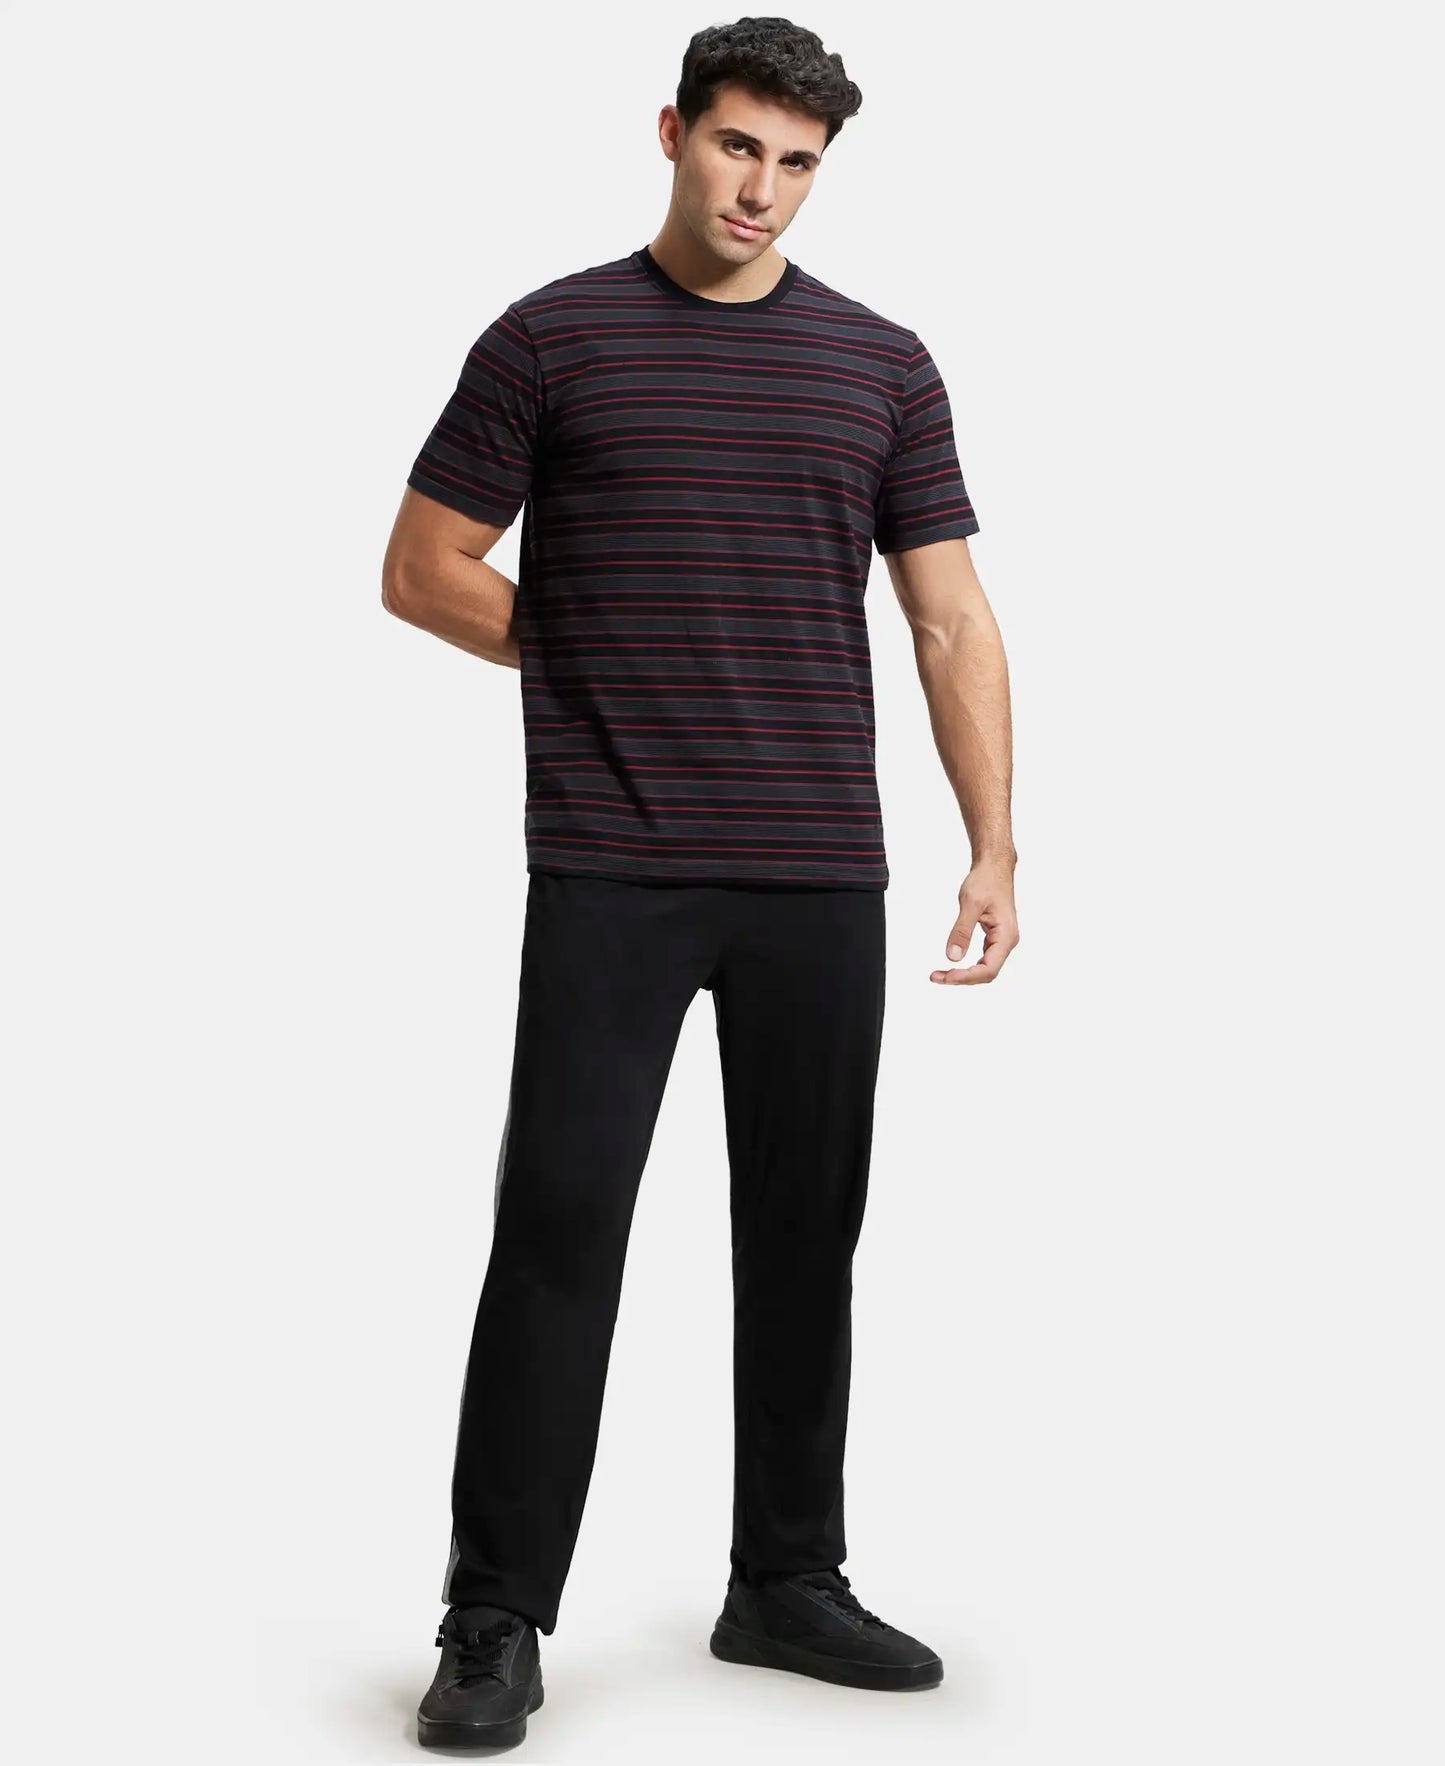 Super Combed Cotton Rich Striped Round Neck Half Sleeve T-Shirt - Black & Graphite-4